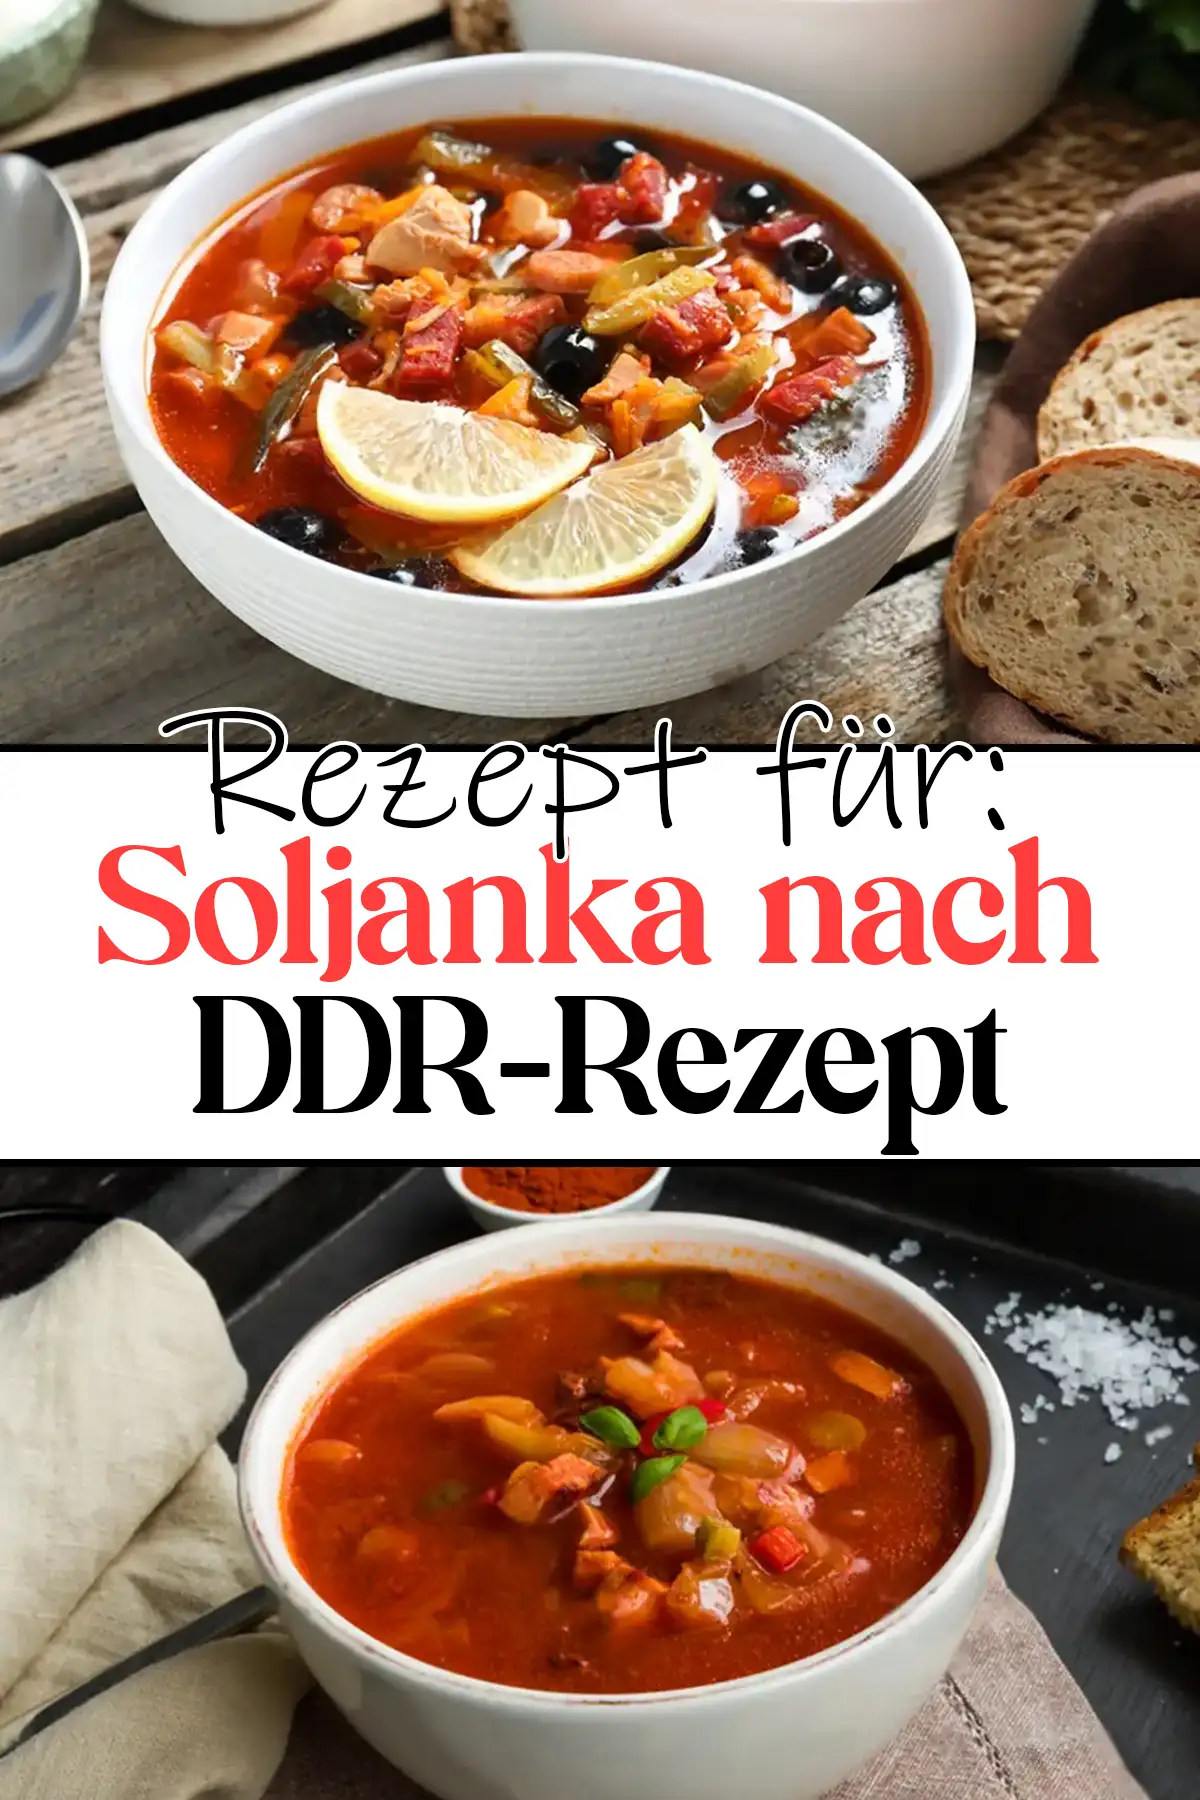 Soljanka nach DDR-Rezept: Ein kulinarisches Erbe